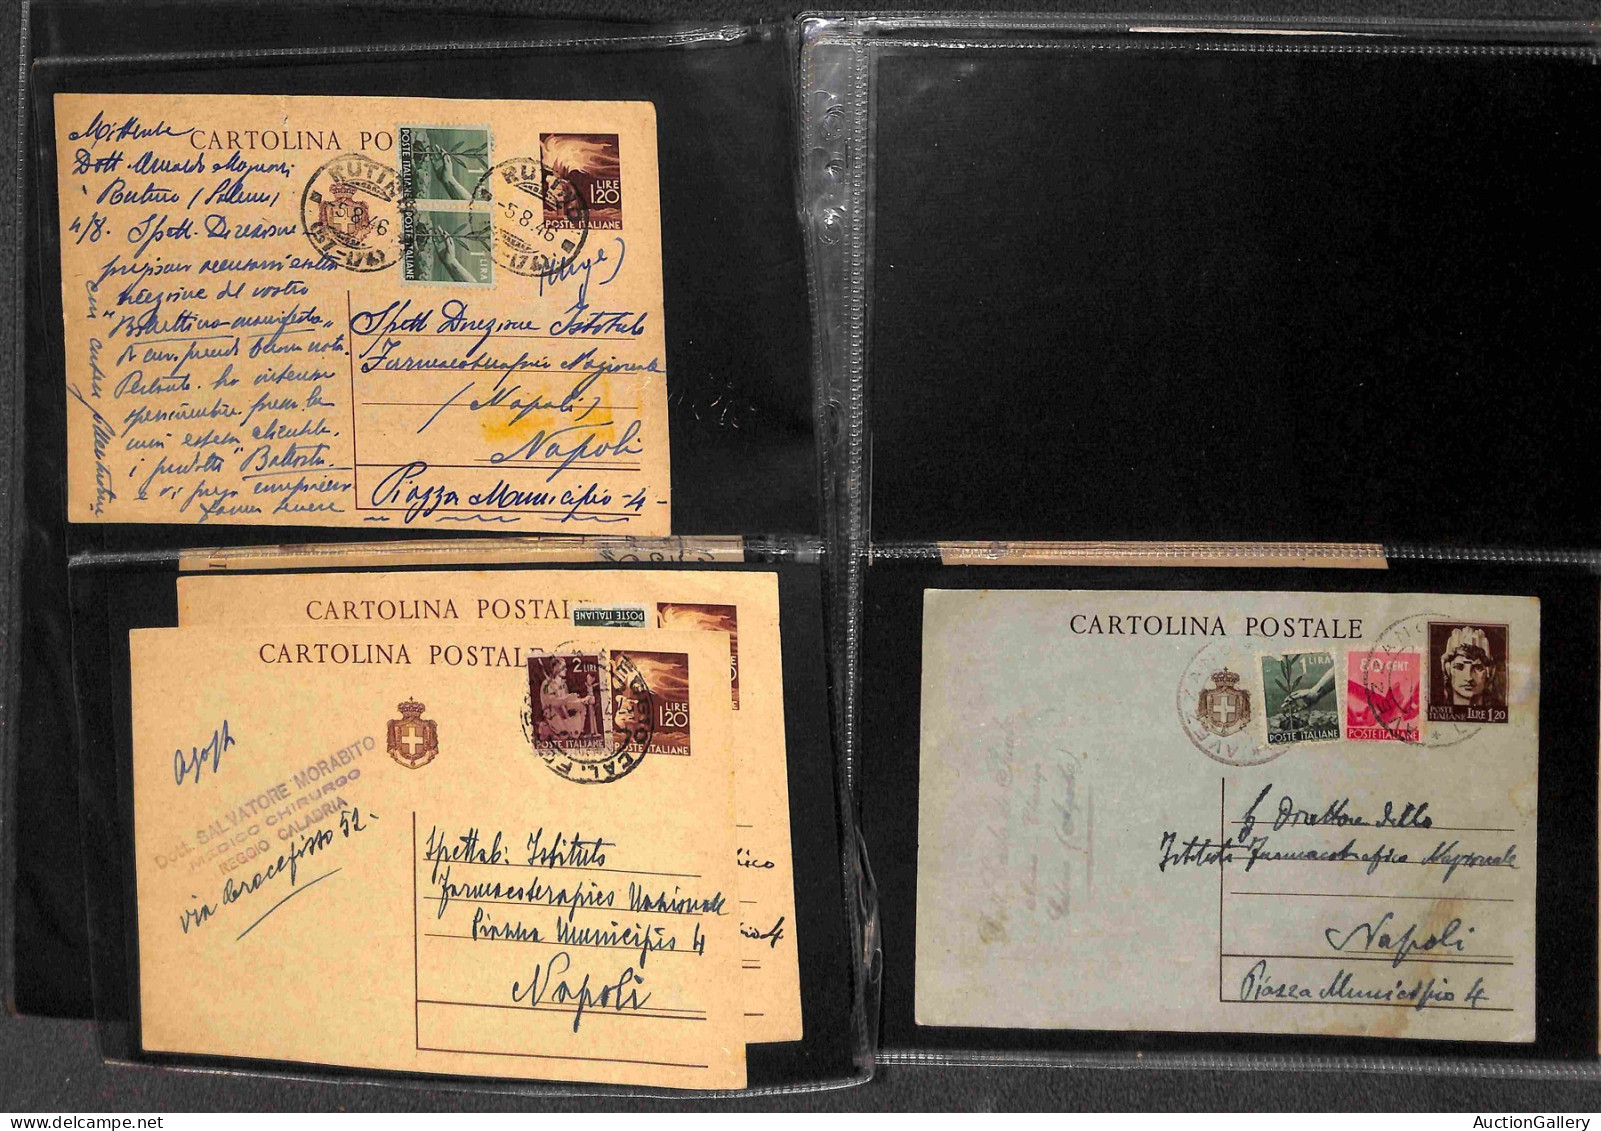 Lotti&Collezioni - Area Italiana - REPUBBLICA - 1945/1946 - Lotto di 44 buste e interi postali del periodo in fogli d'al